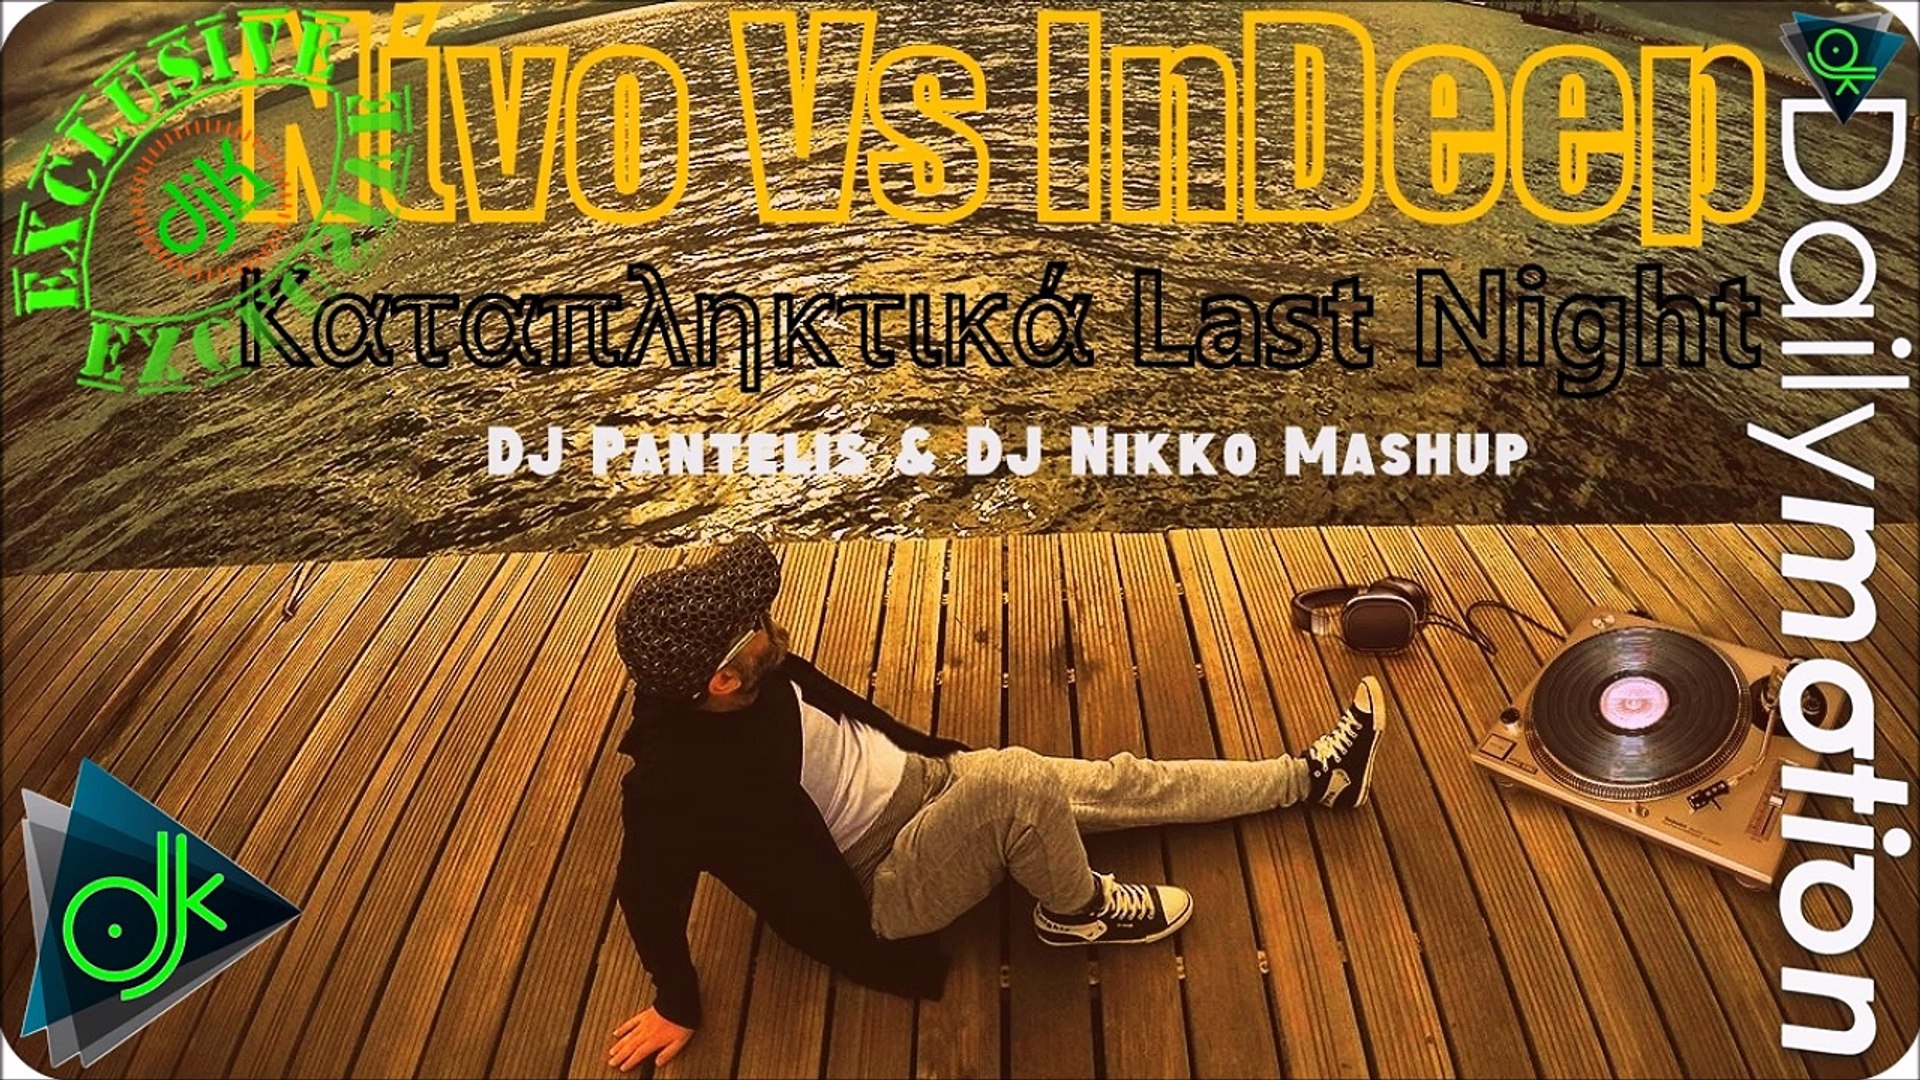 Νίνο Vs InDeep- Καταπληκτικά Last Night (DJ Pantelis & DJ Nikko Mashup) -  video Dailymotion